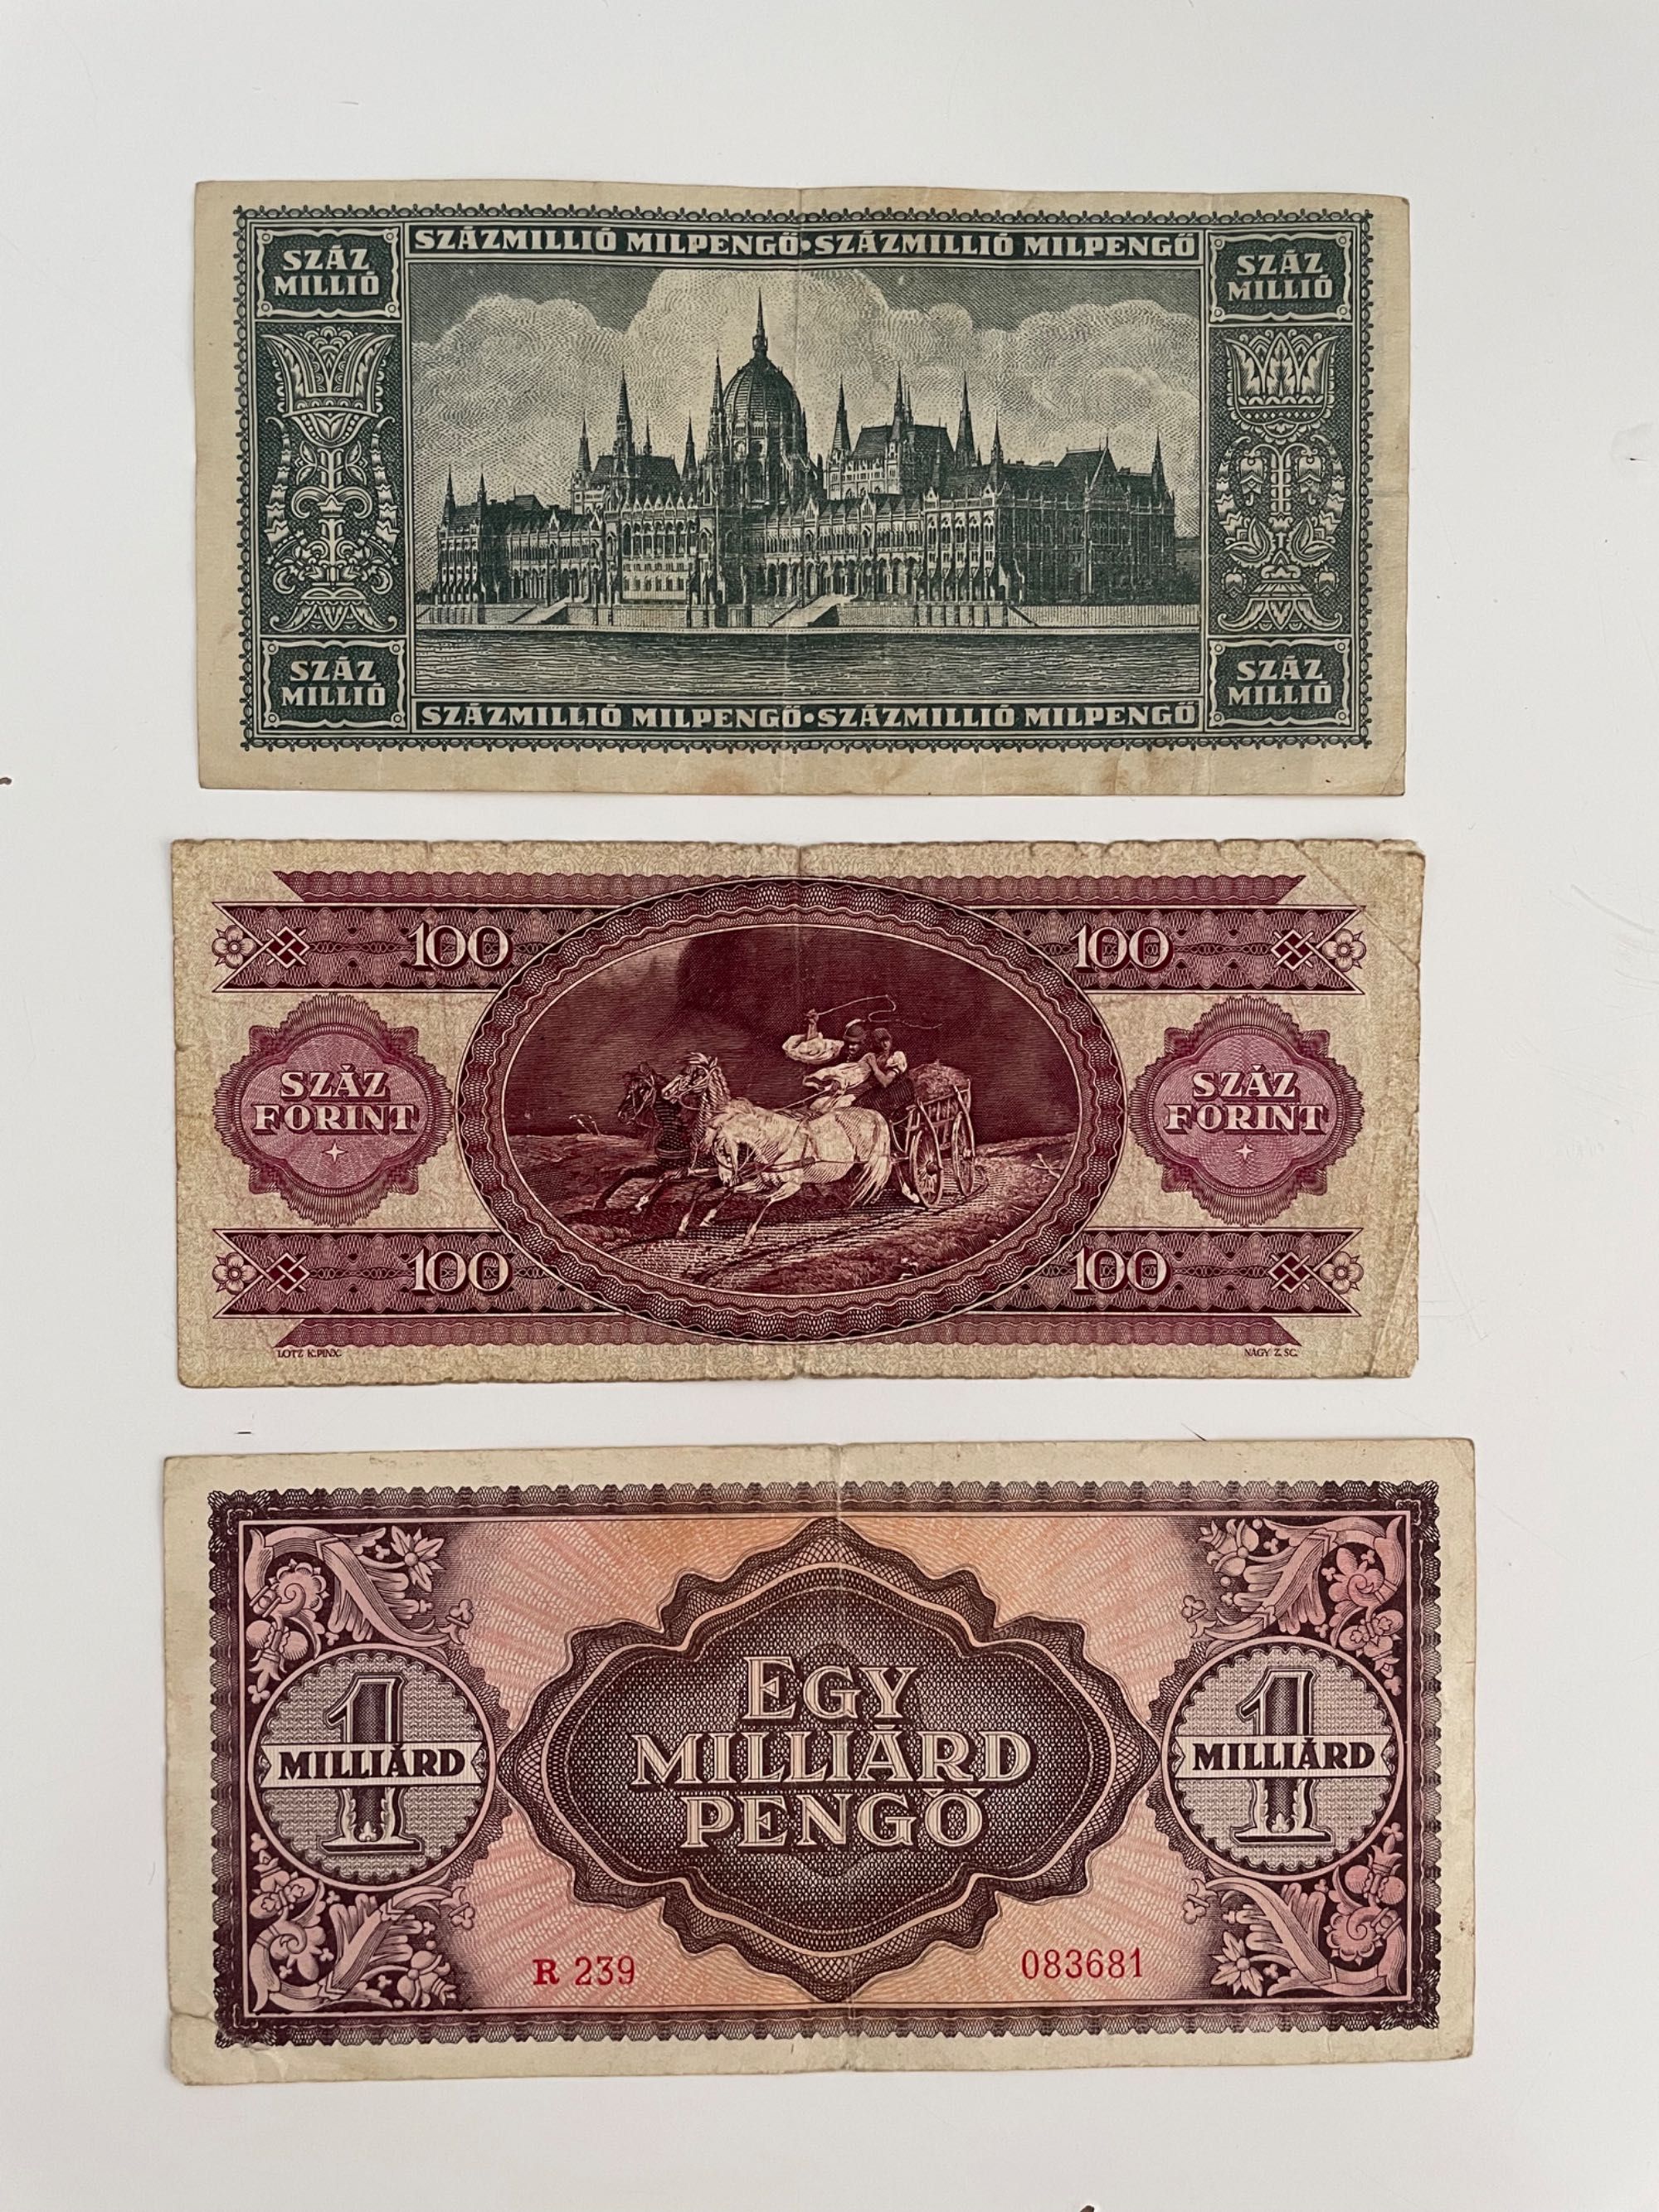 Vând colecție bancnote vechi